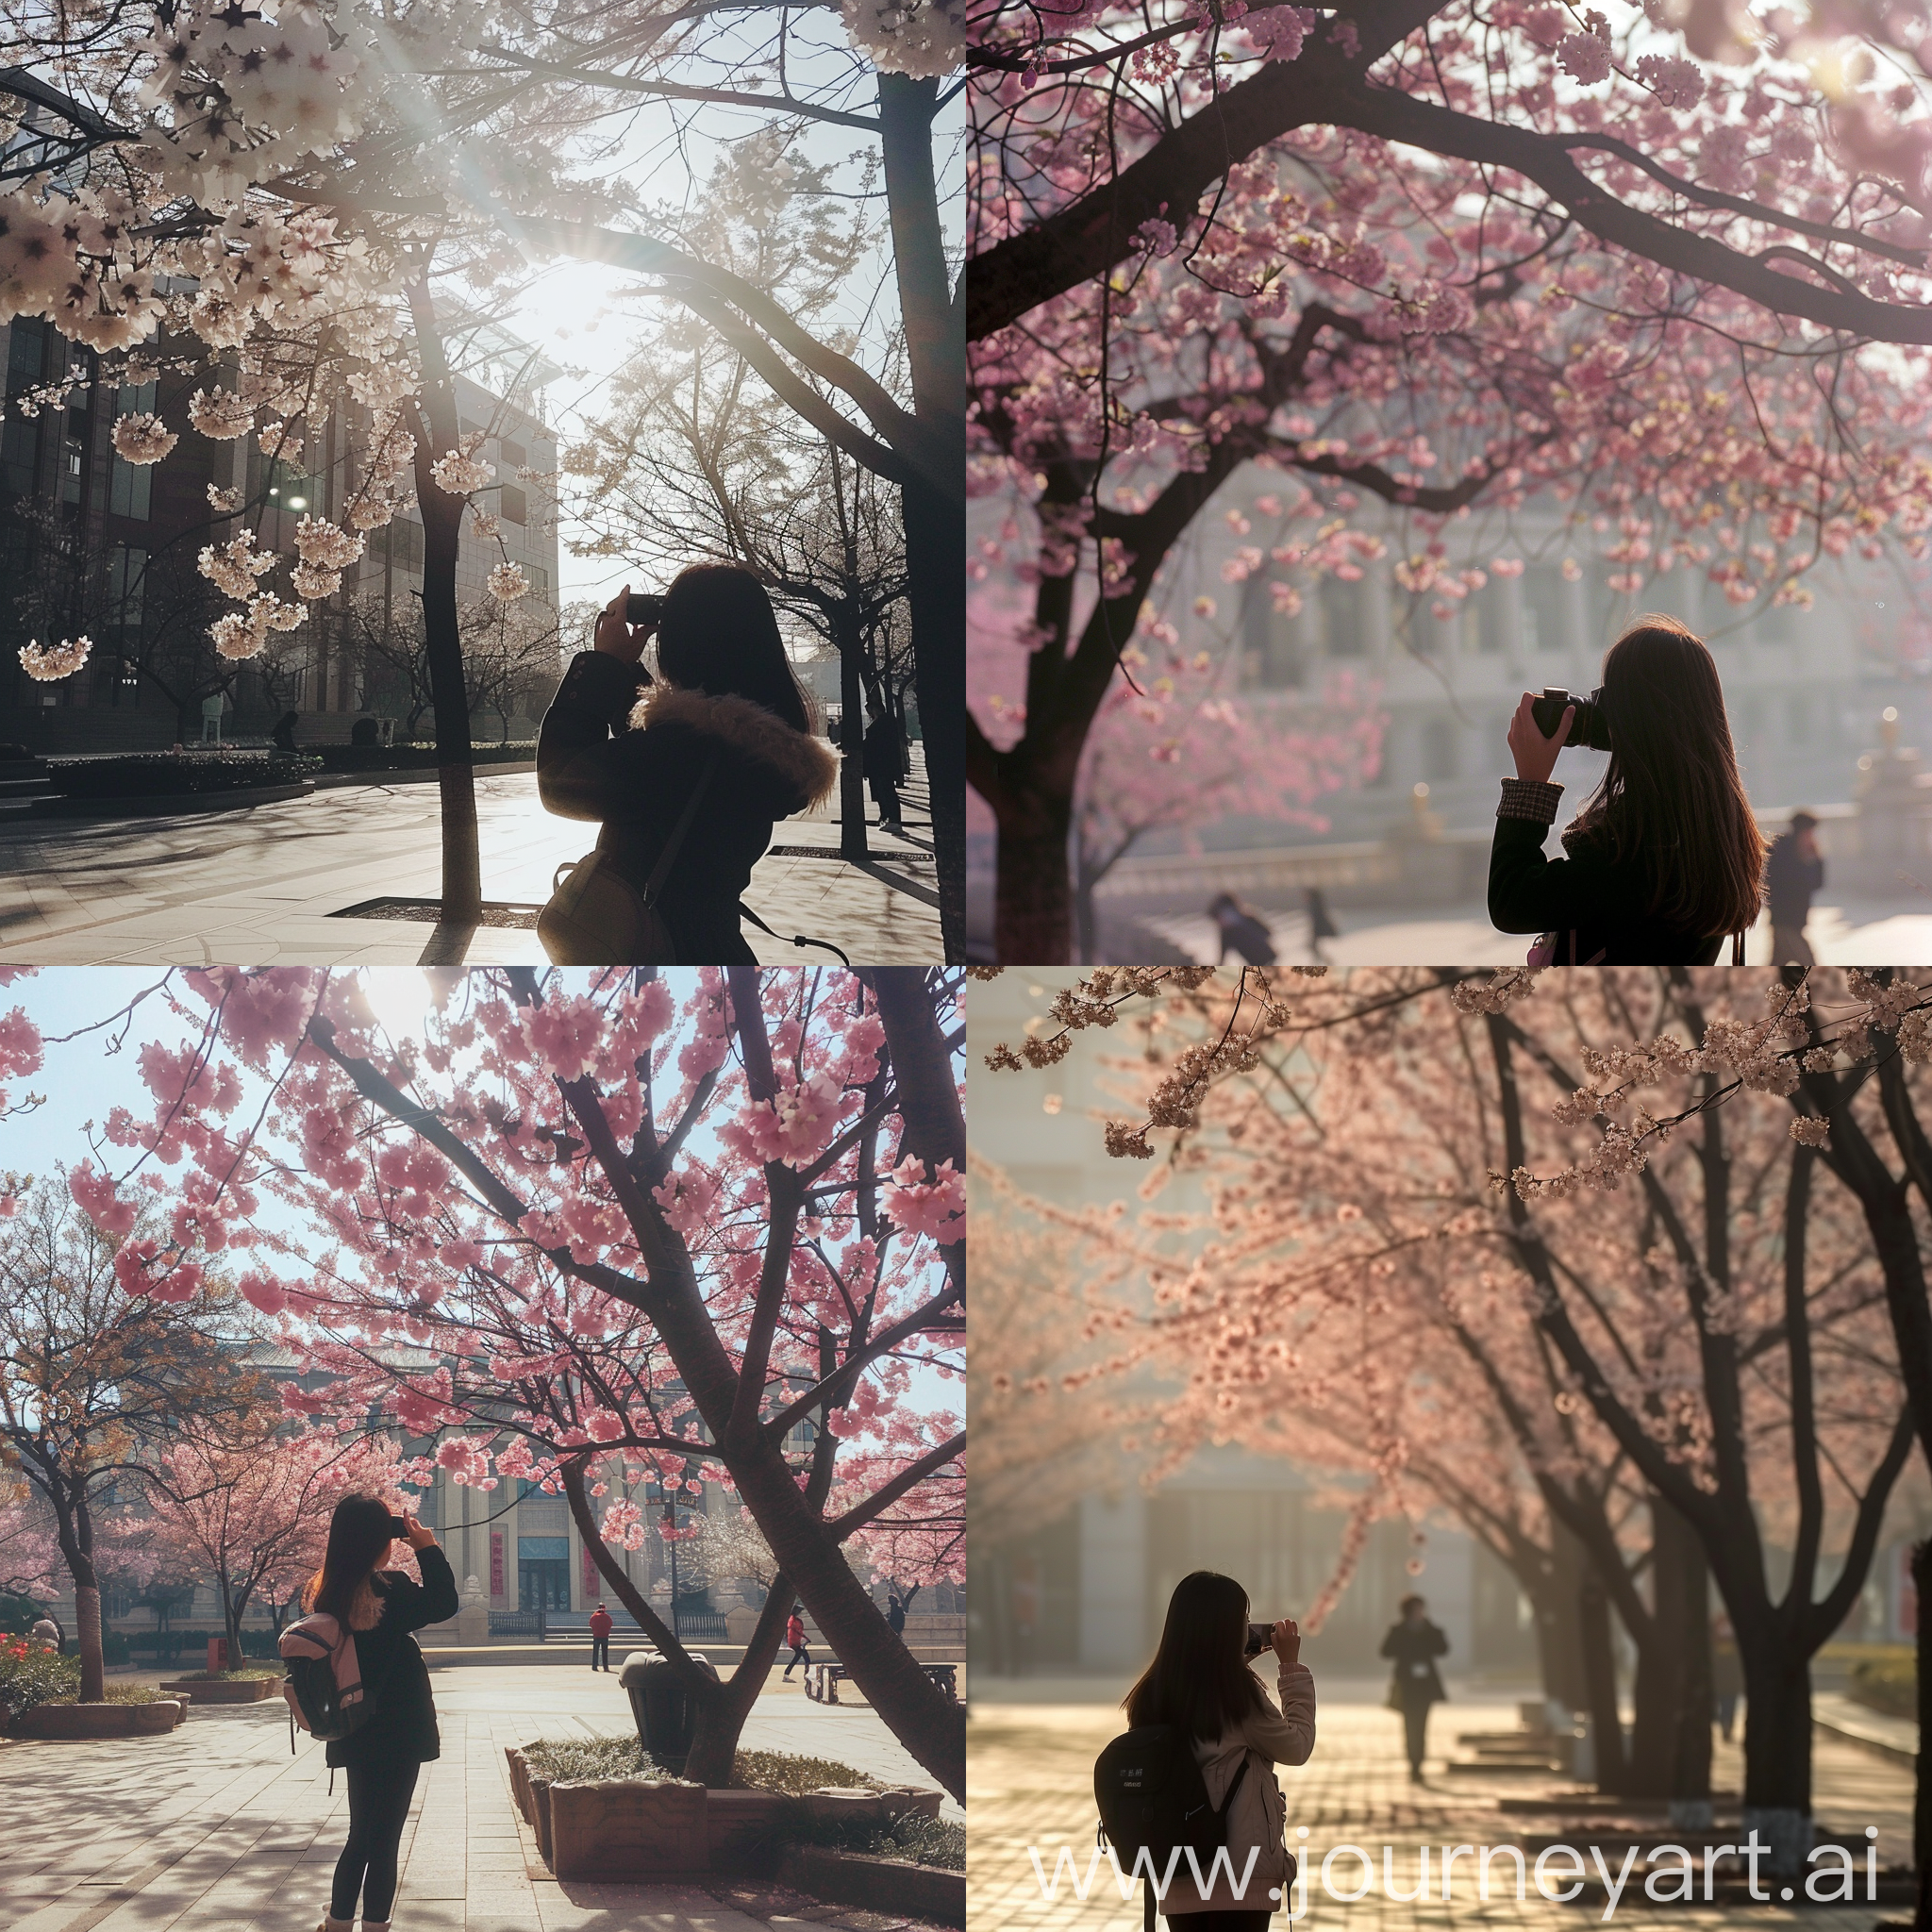 青春少女在潍坊市政府前樱花树下拍照，青春靓丽，风和日丽，背影和侧颜，绝美画面，